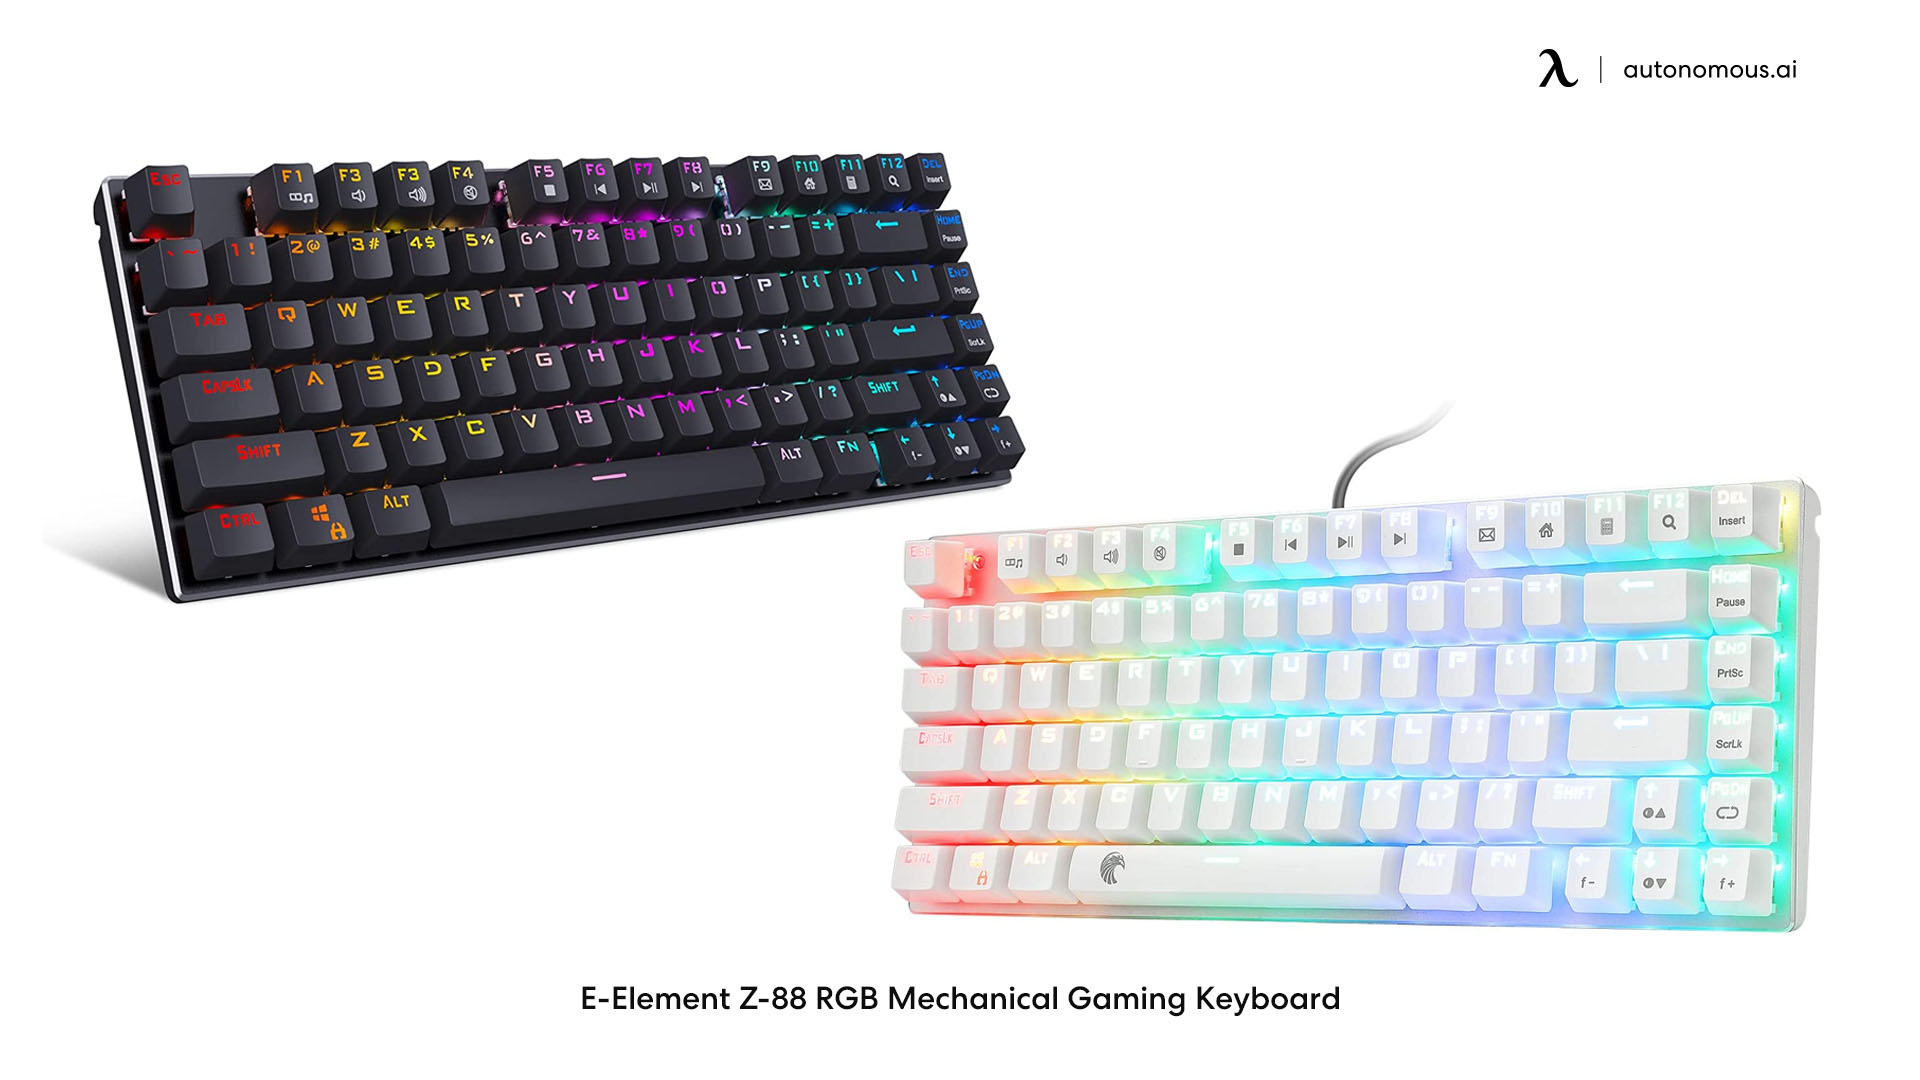 E-Element Z-88 75% keyboard